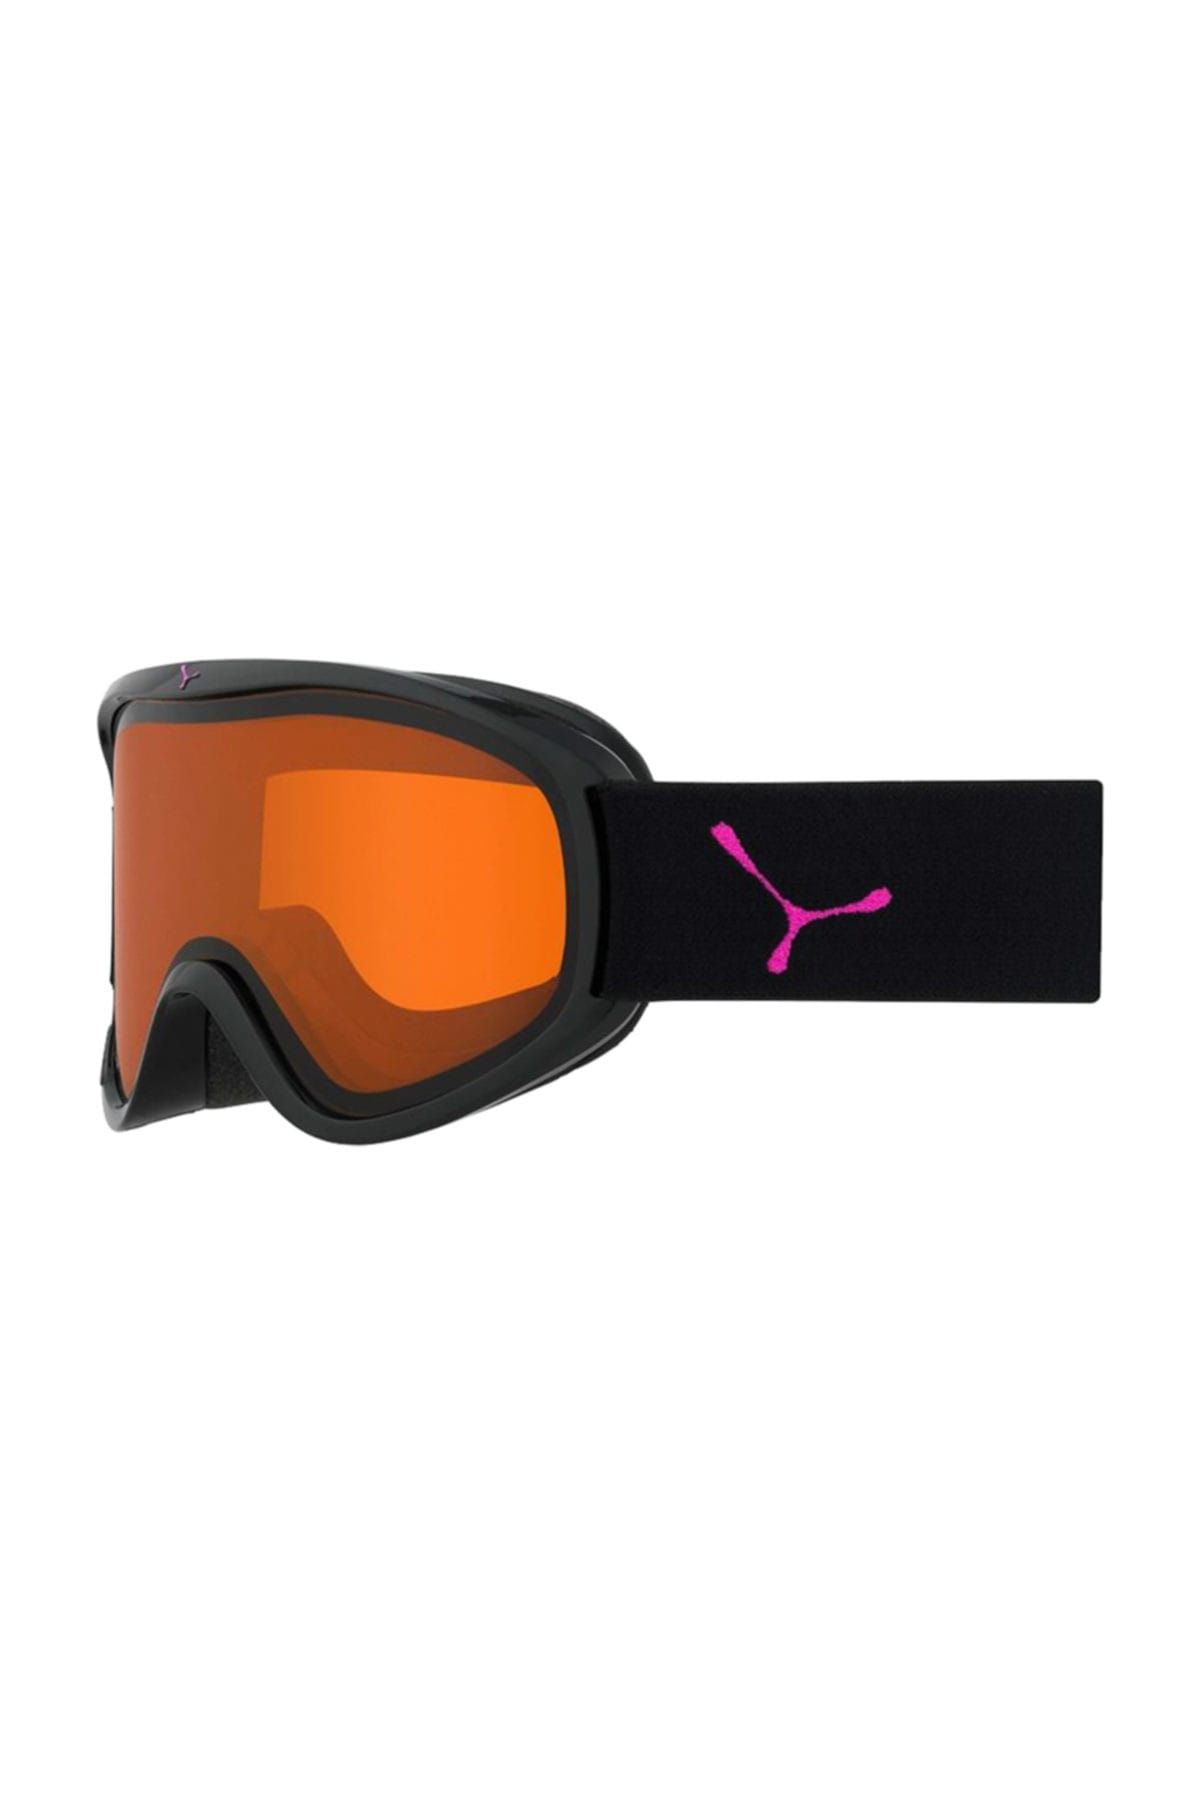 Cebe Razor Kayak Snowboard Gözlük M Siyah & Pınk Oranj